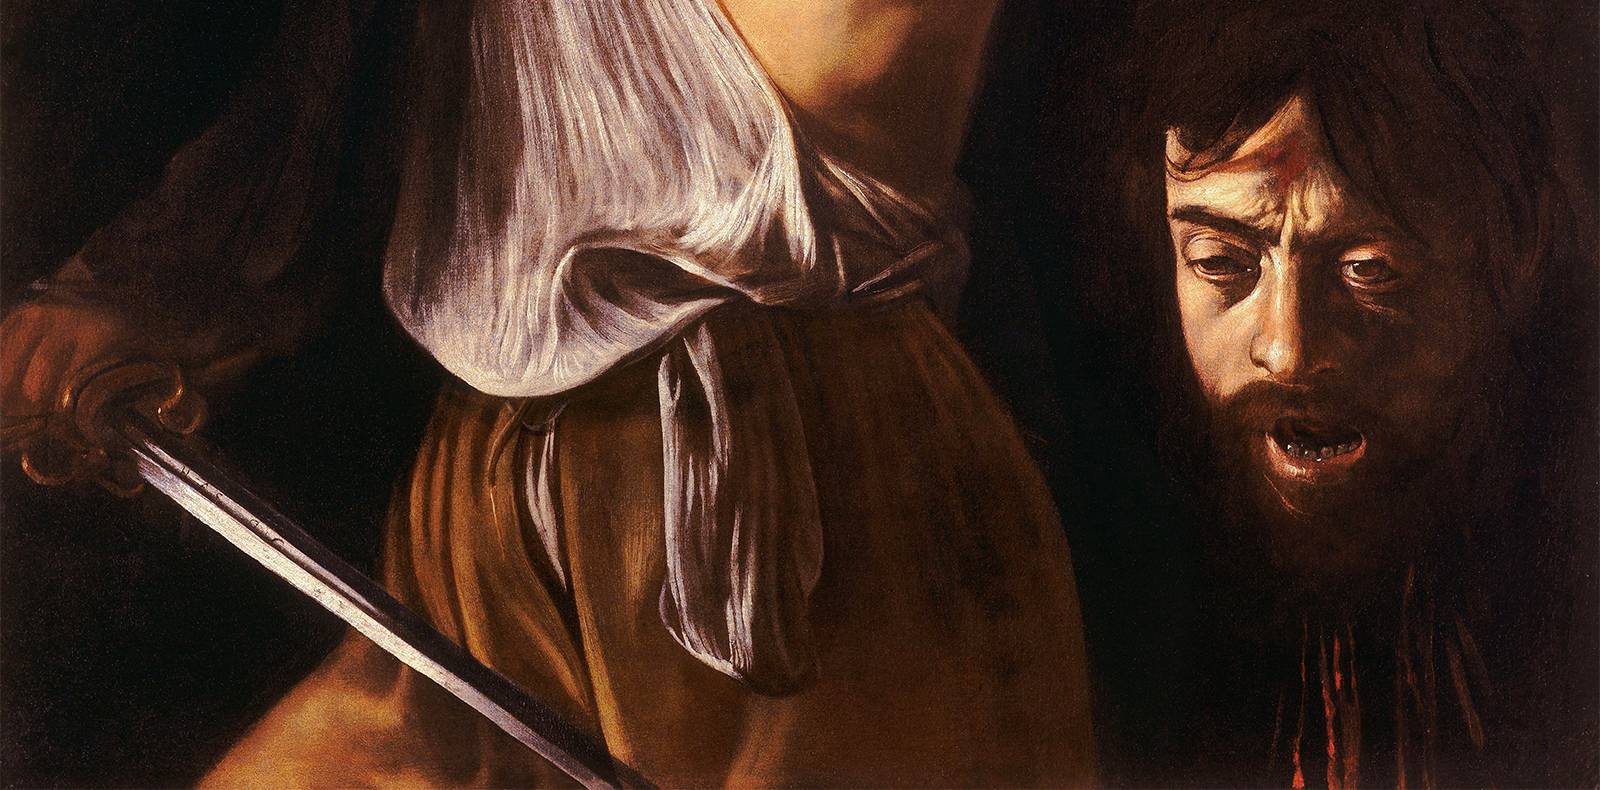 Le Caravage, Art Italien, Meurtre, Sang, Judith et Holopherne, Exposition Louvre, Naples à Paris